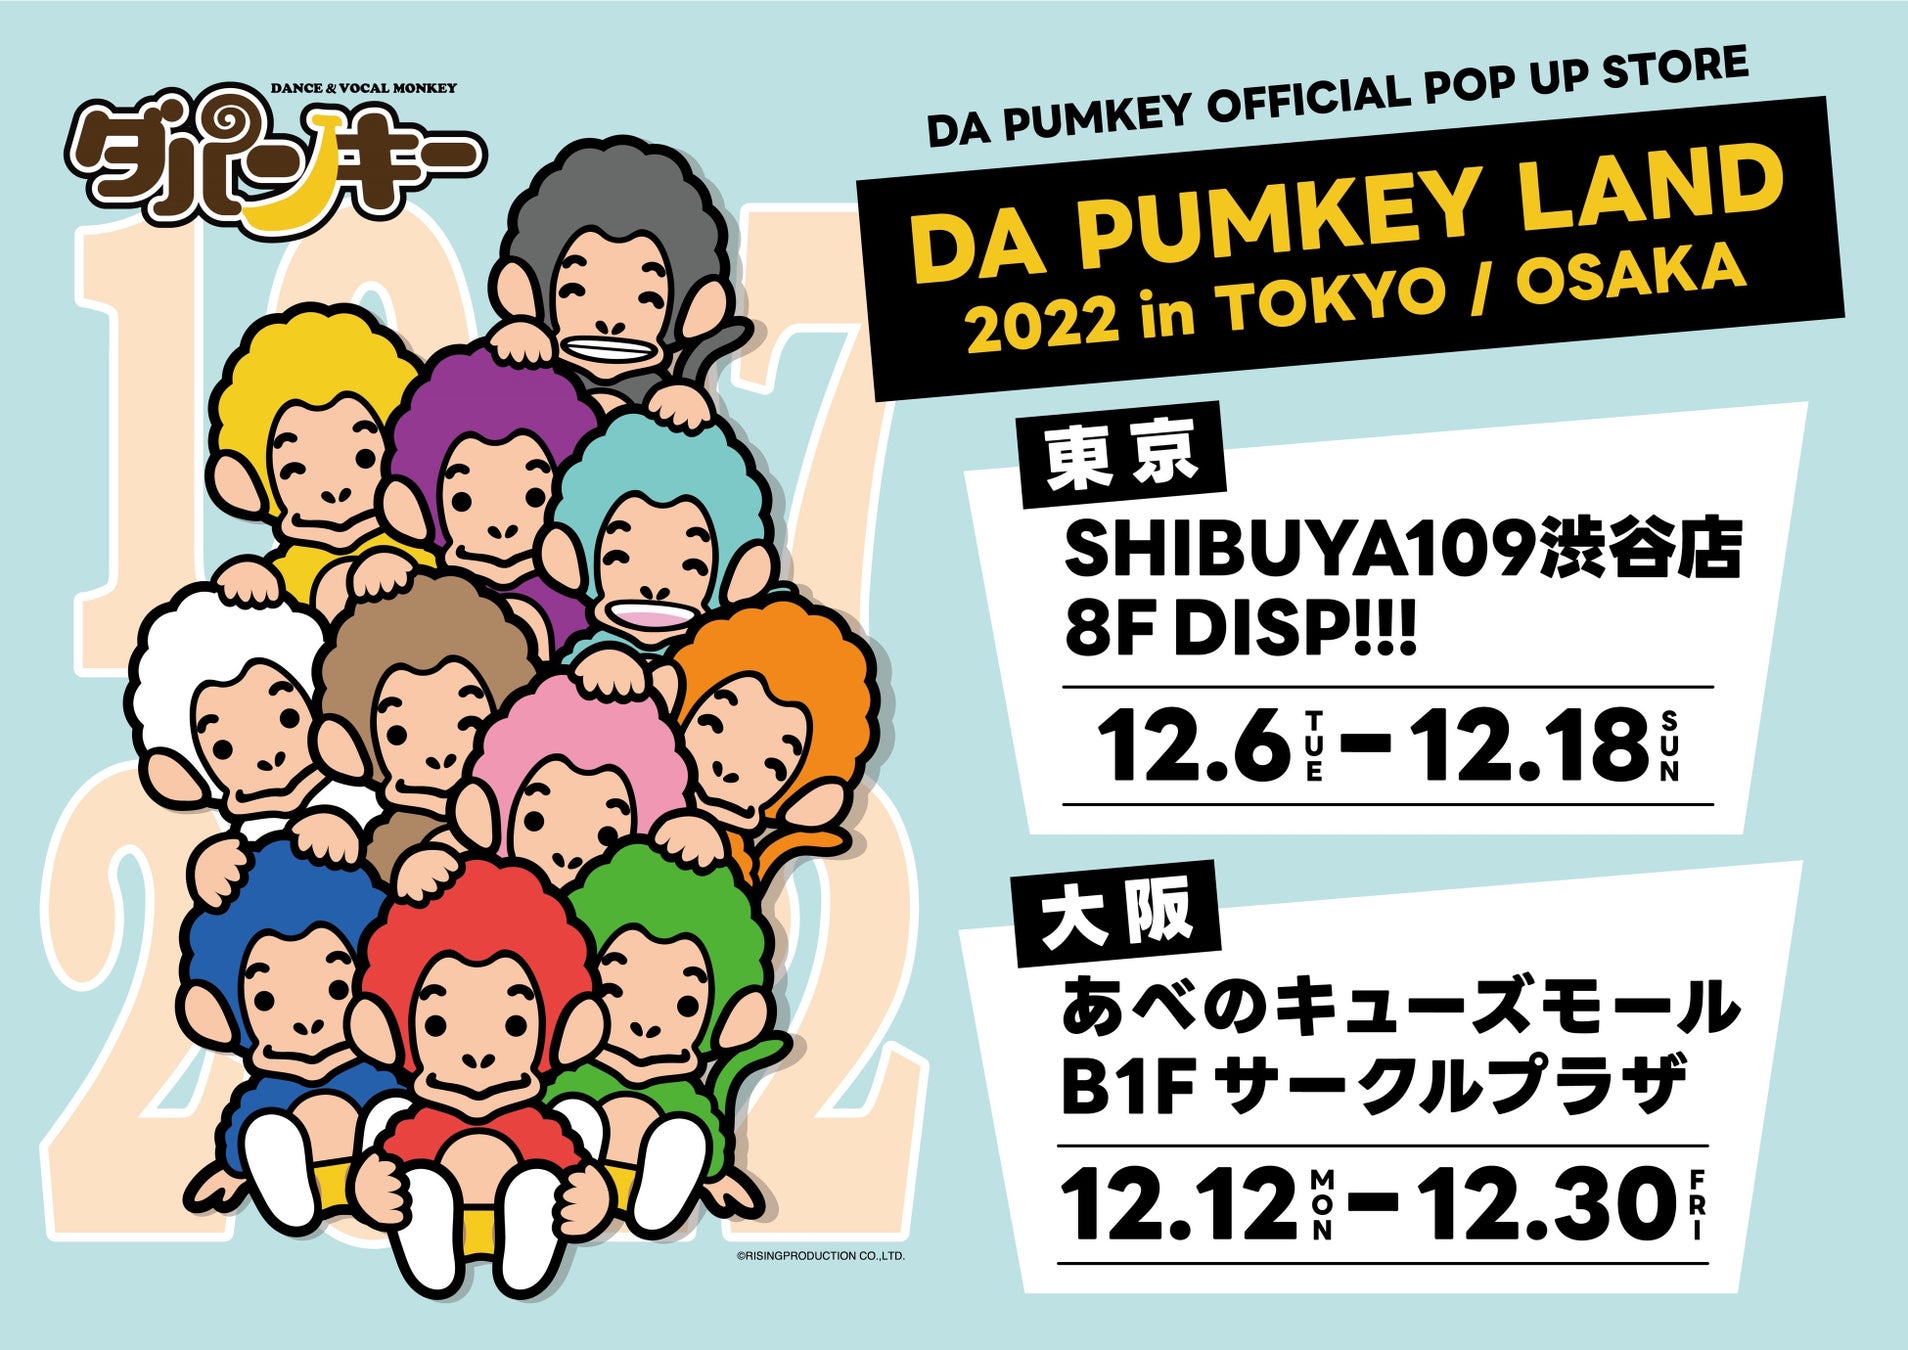 ダンス&ボーカルモンキー DA PUMKEYのポップアップストア、いよいよ明日12月6日(火)オープン！初日はダパンキーも来店！のサブ画像2